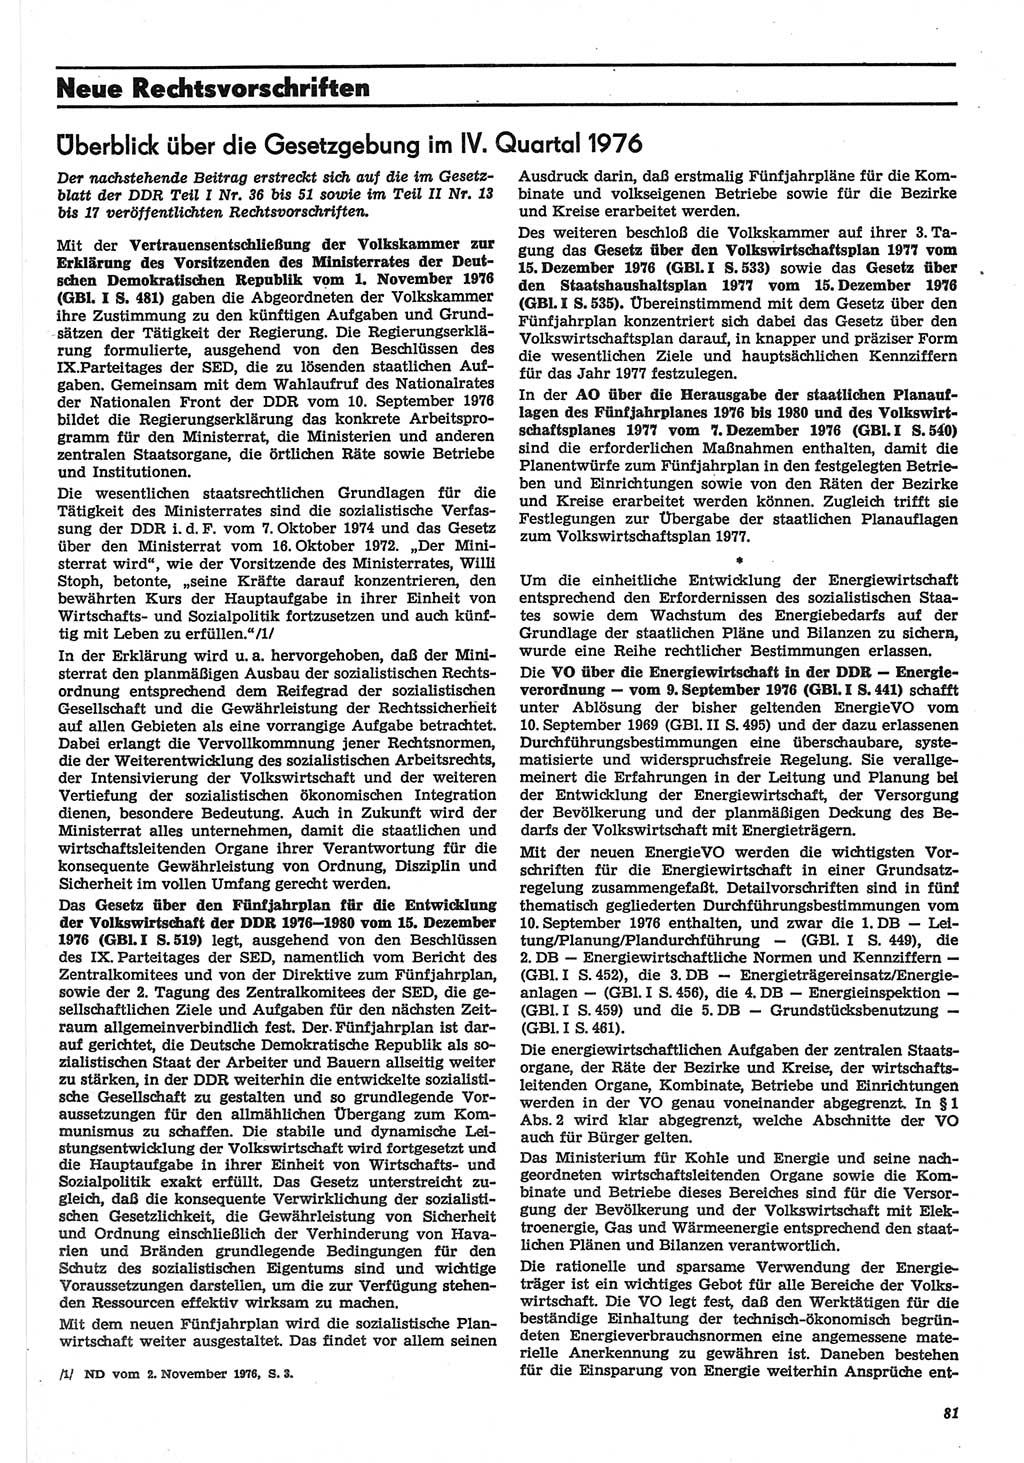 Neue Justiz (NJ), Zeitschrift für Recht und Rechtswissenschaft-Zeitschrift, sozialistisches Recht und Gesetzlichkeit, 31. Jahrgang 1977, Seite 81 (NJ DDR 1977, S. 81)